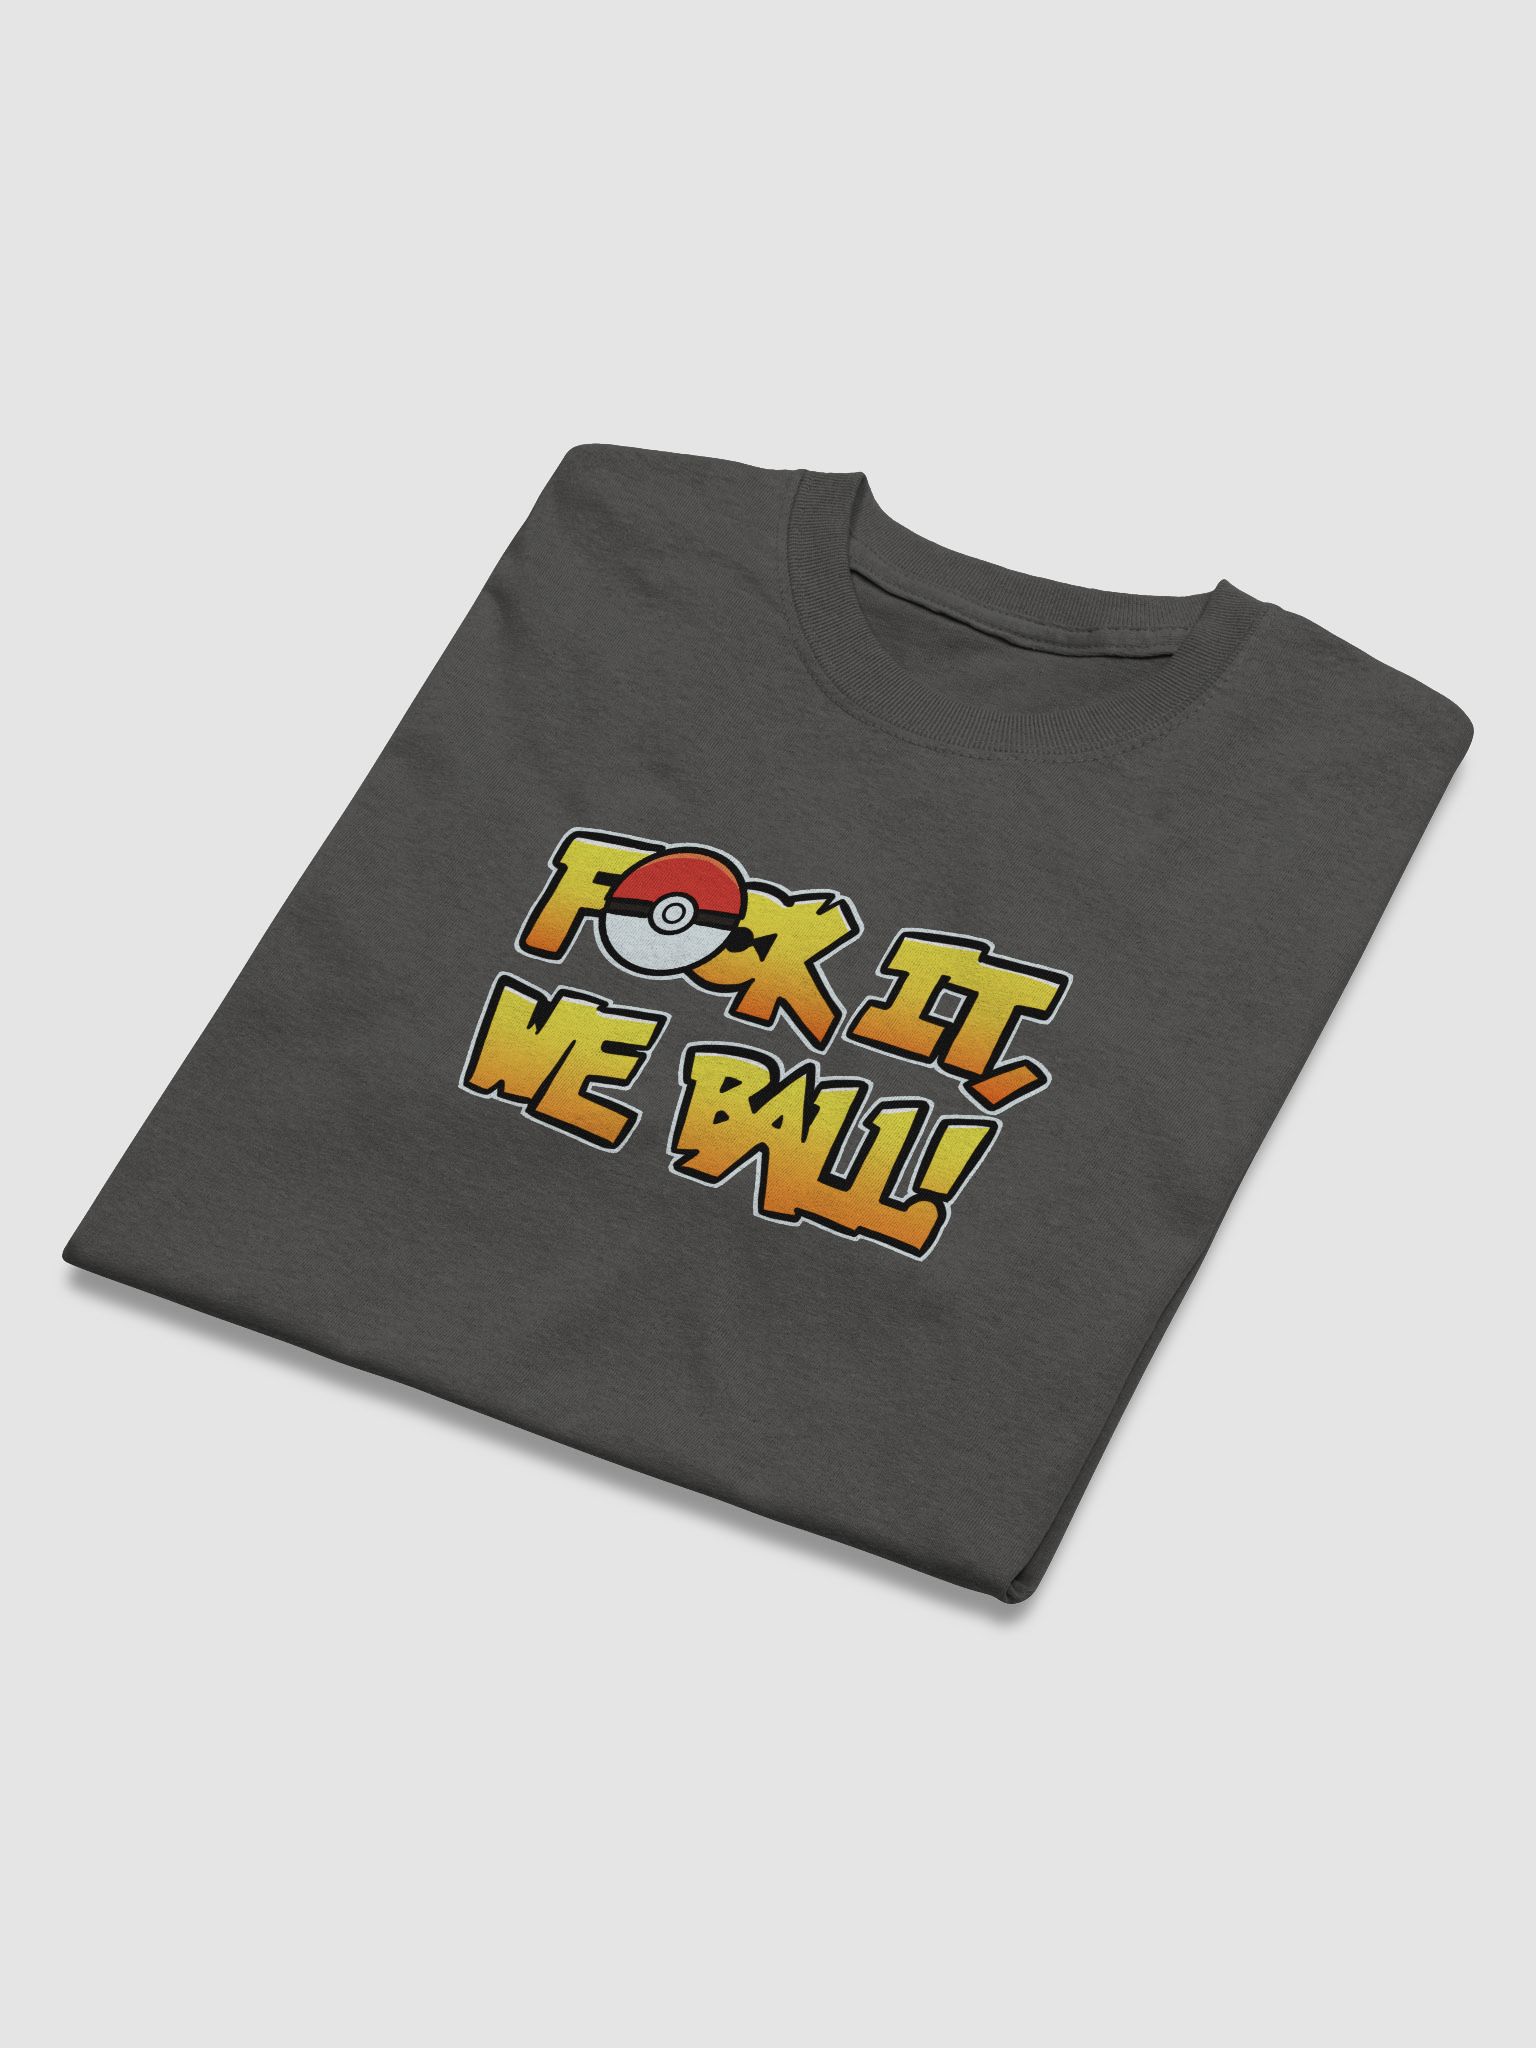 Fock It T-Shirt! | PowerPunchPlays